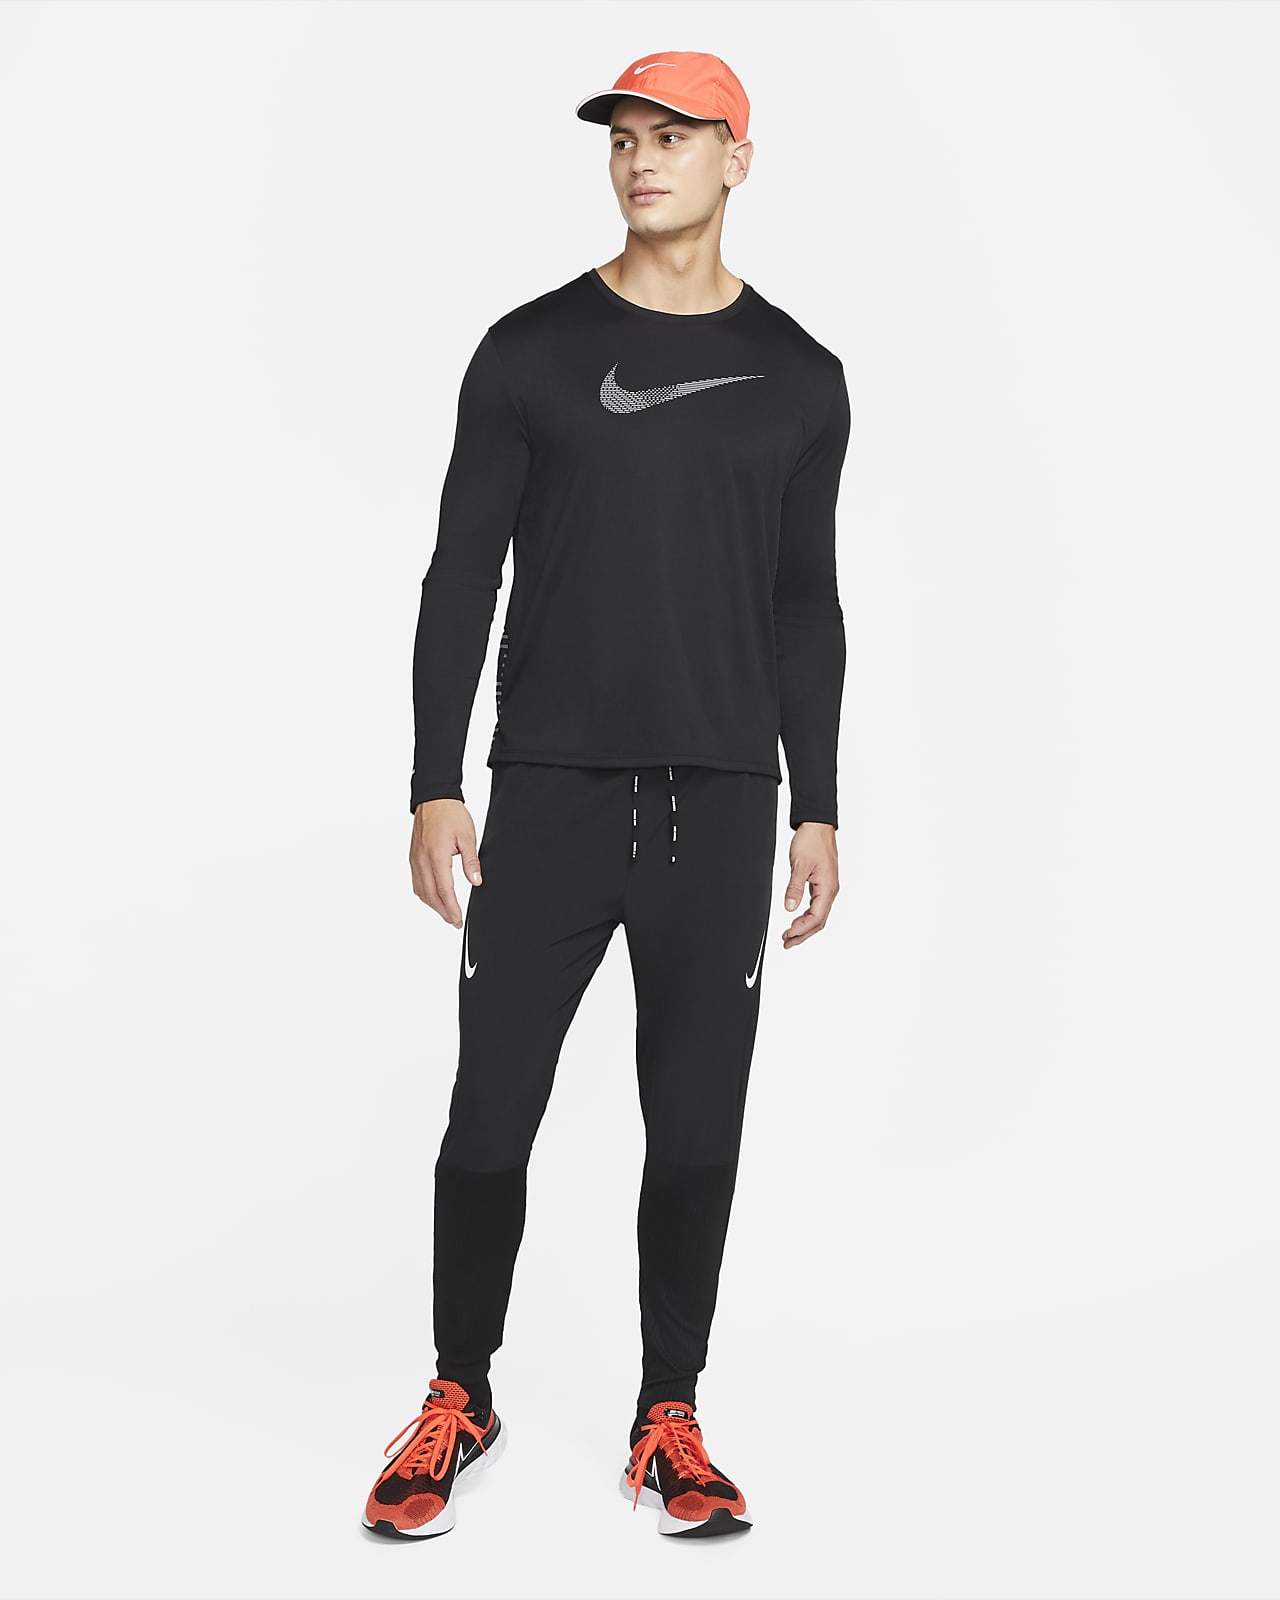 Nike Dri-FIT ADV AeroSwift Racing Trousers 'Black' DM4615-010 - KICKS CREW